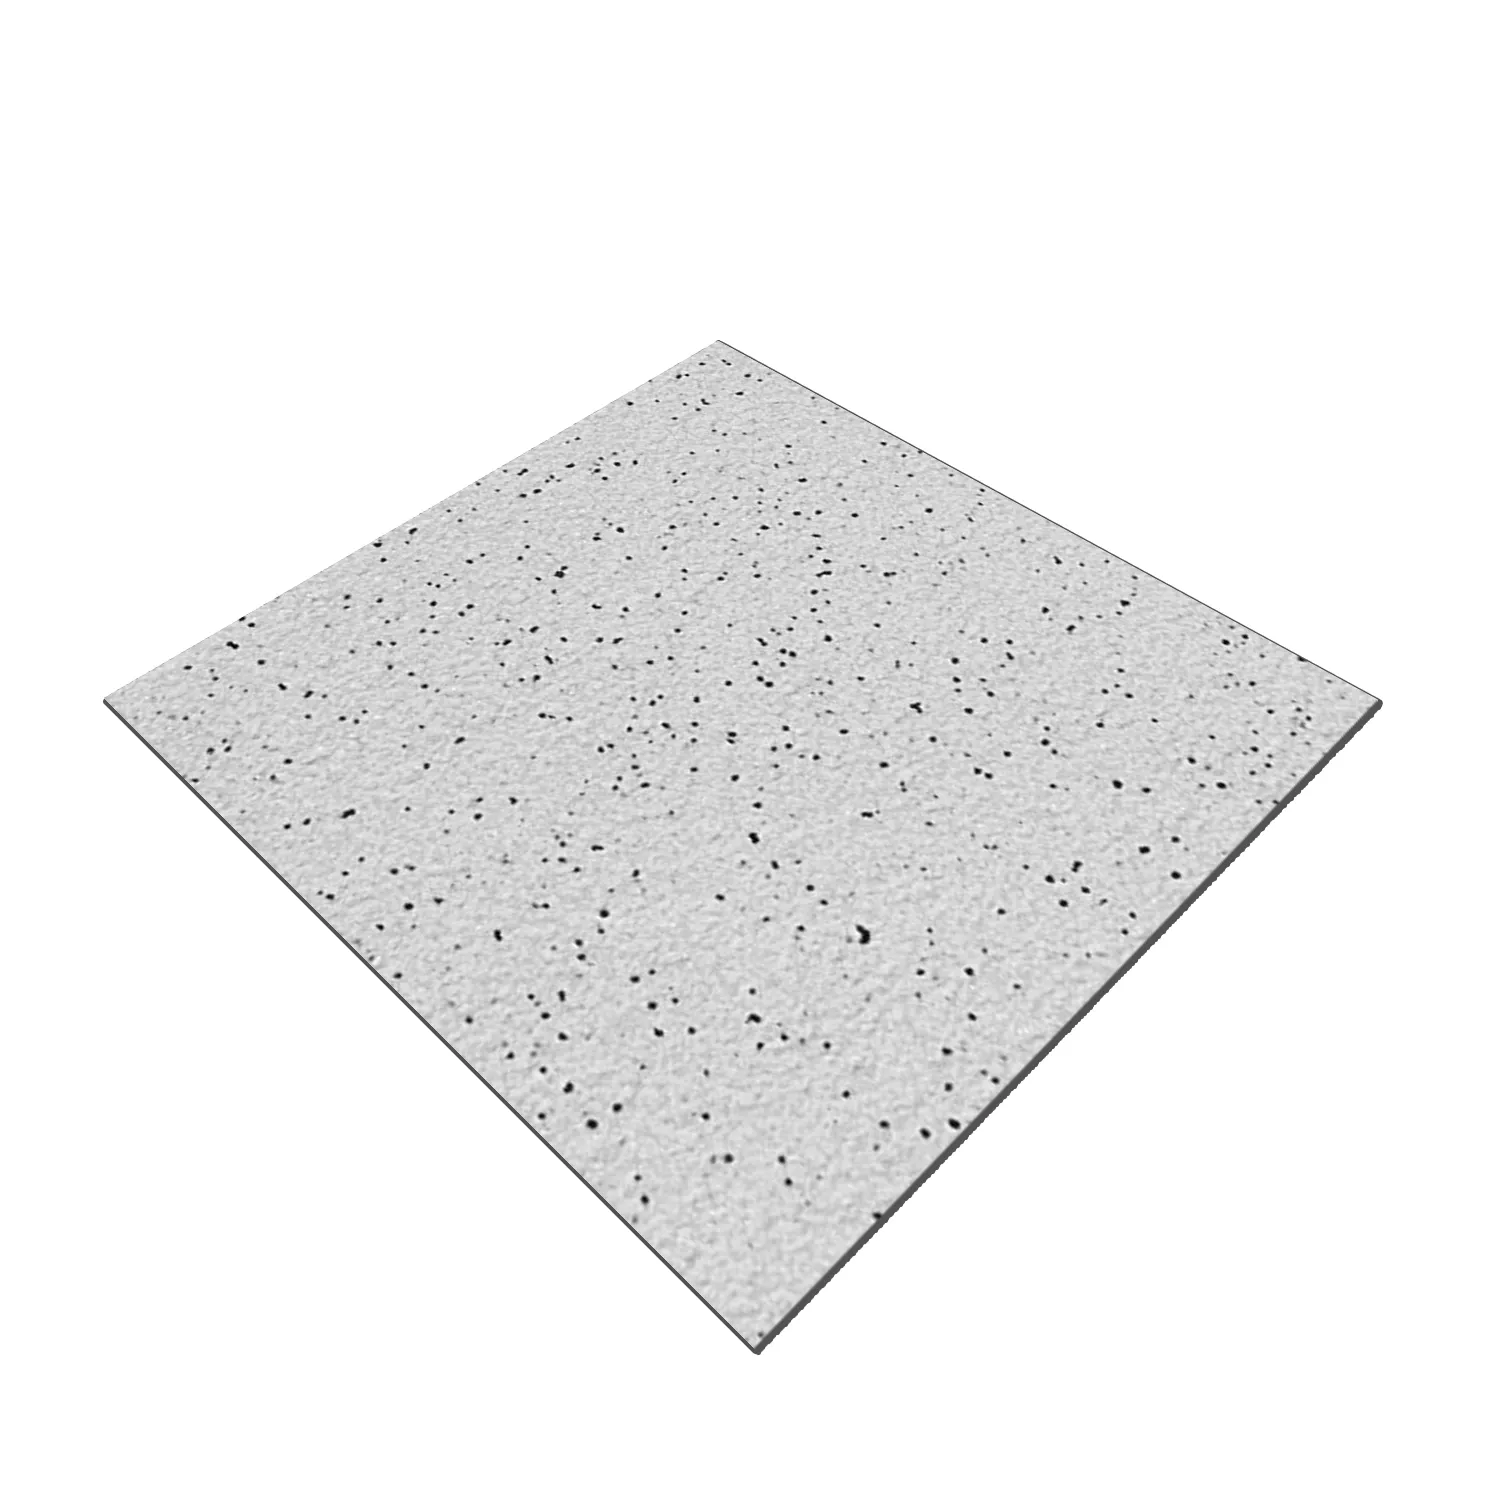 Sample Floor Tiles Fine Grain R11/B Grey 20x20cm